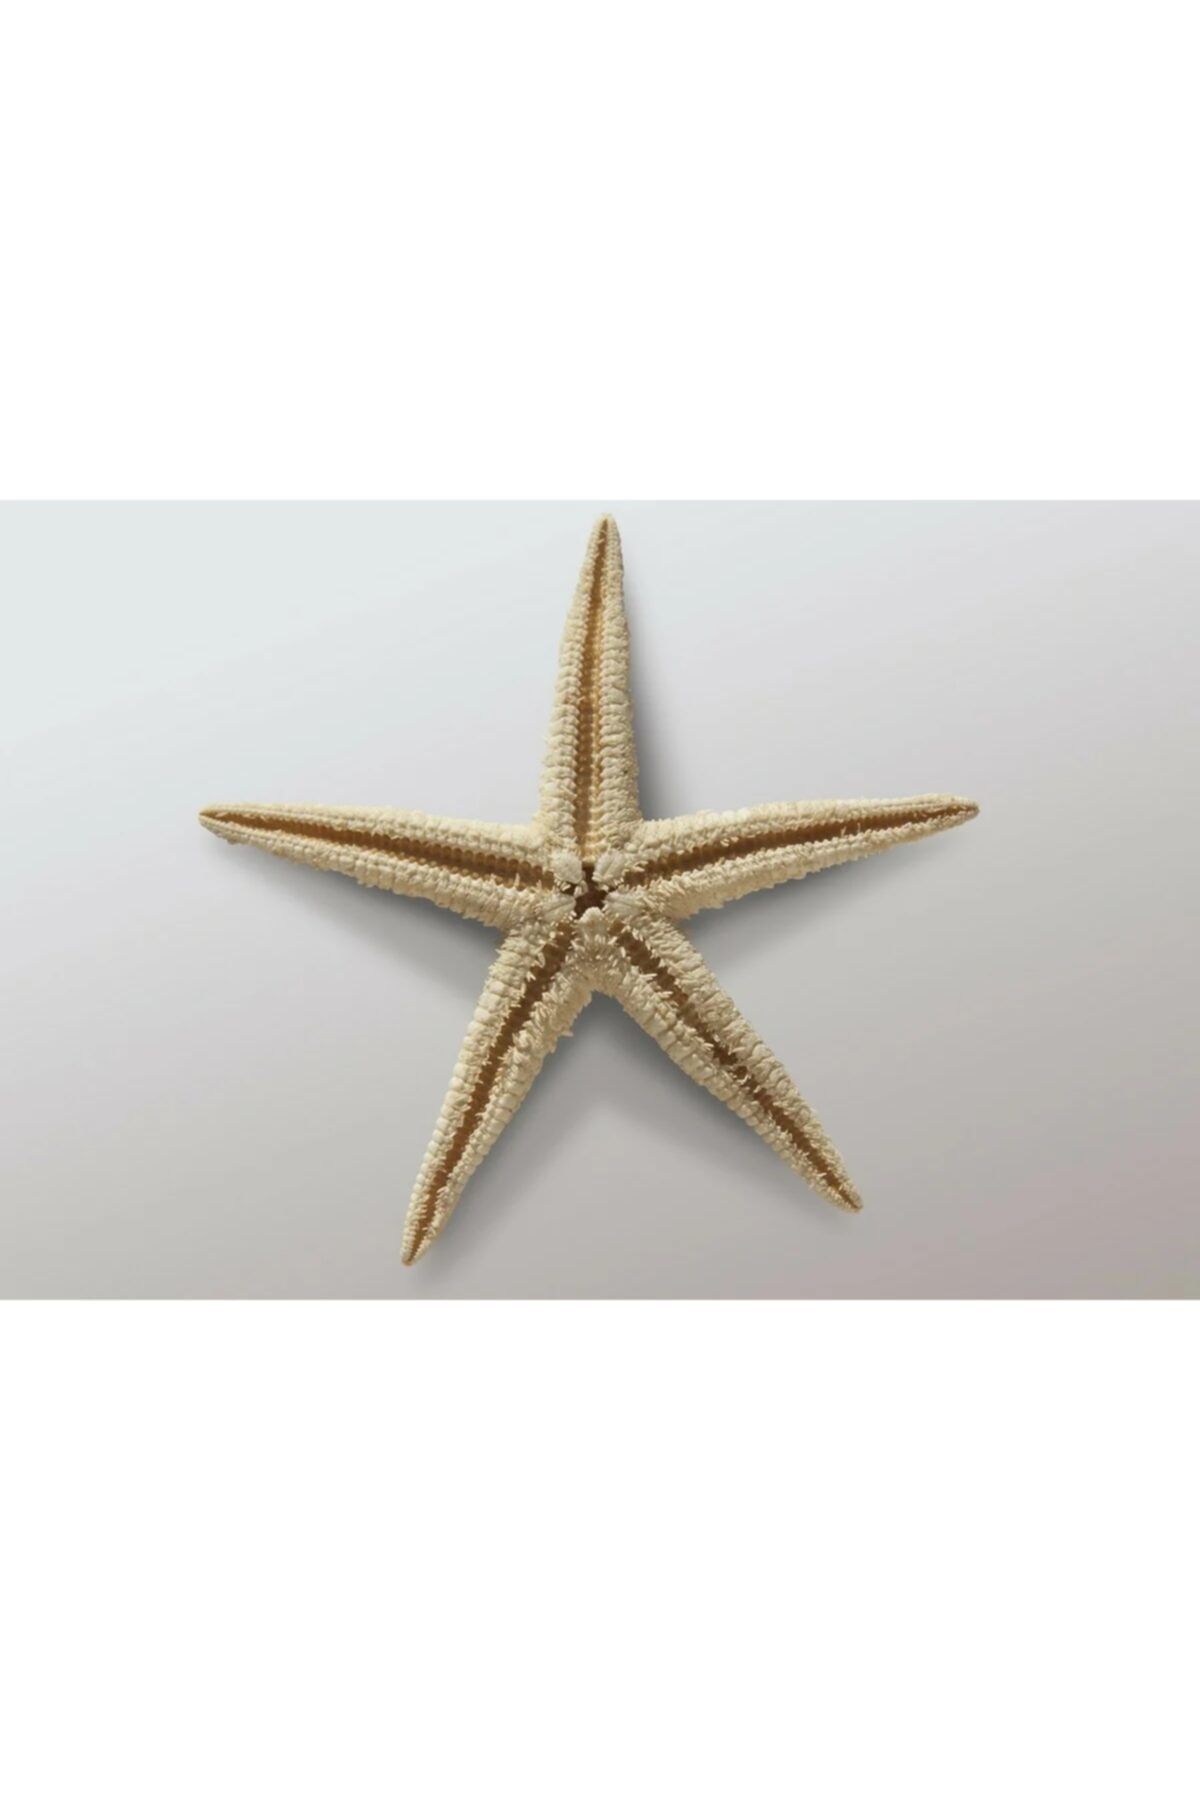 Aker Hediyelik Natürel Deniz Yıldızı 20 Adet 1,5x3,5cm